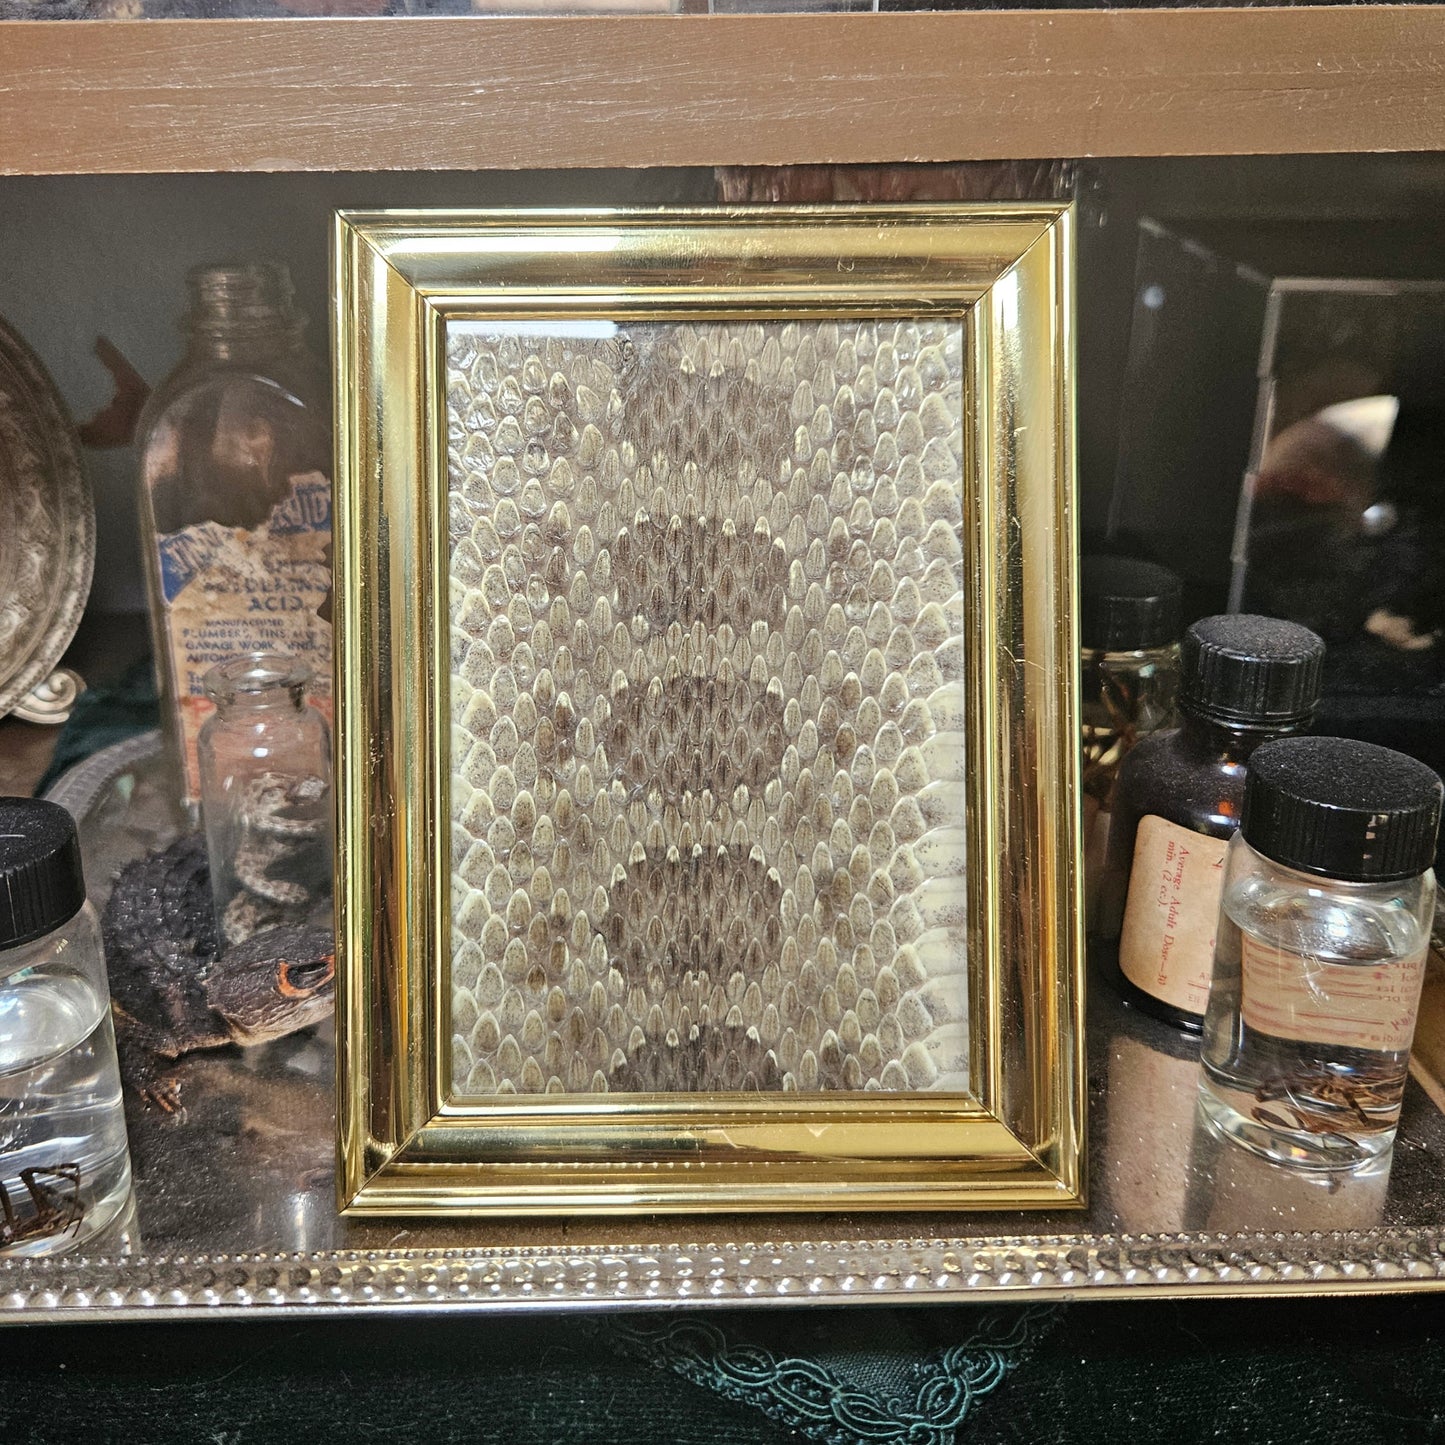 Framed rattlesnake skin